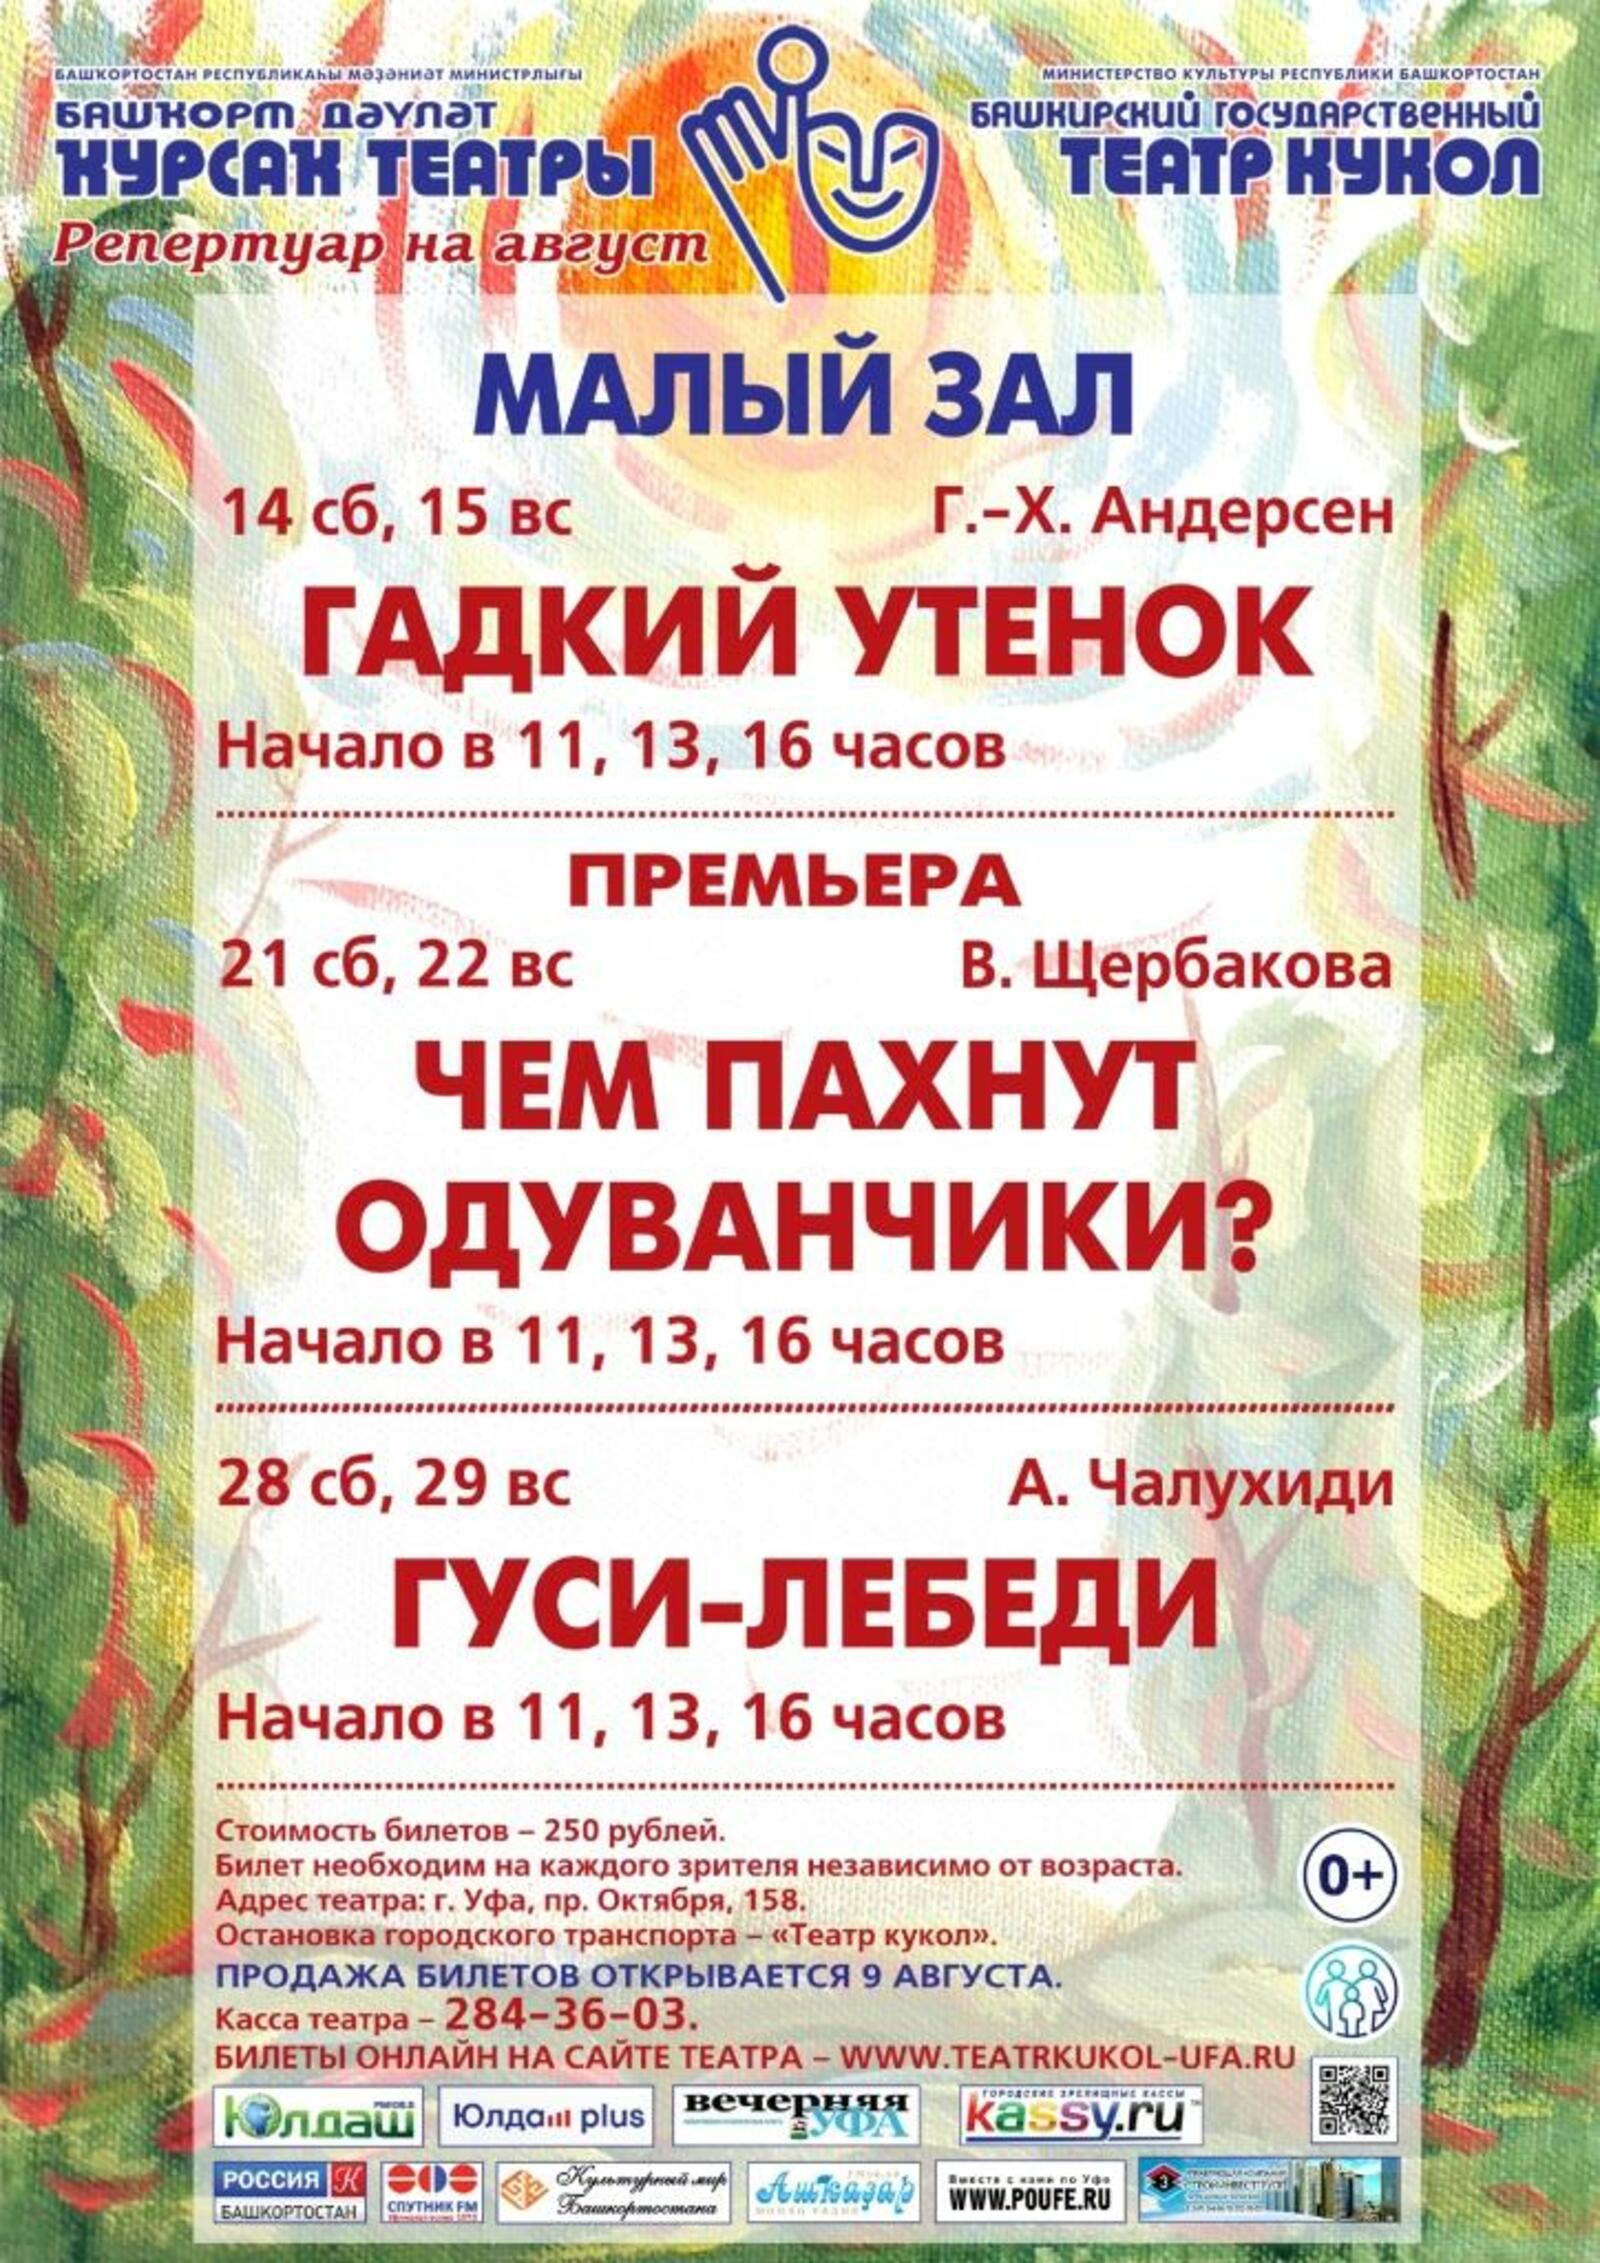 Башкирский театр кукол откроет новый сезон уже в августе